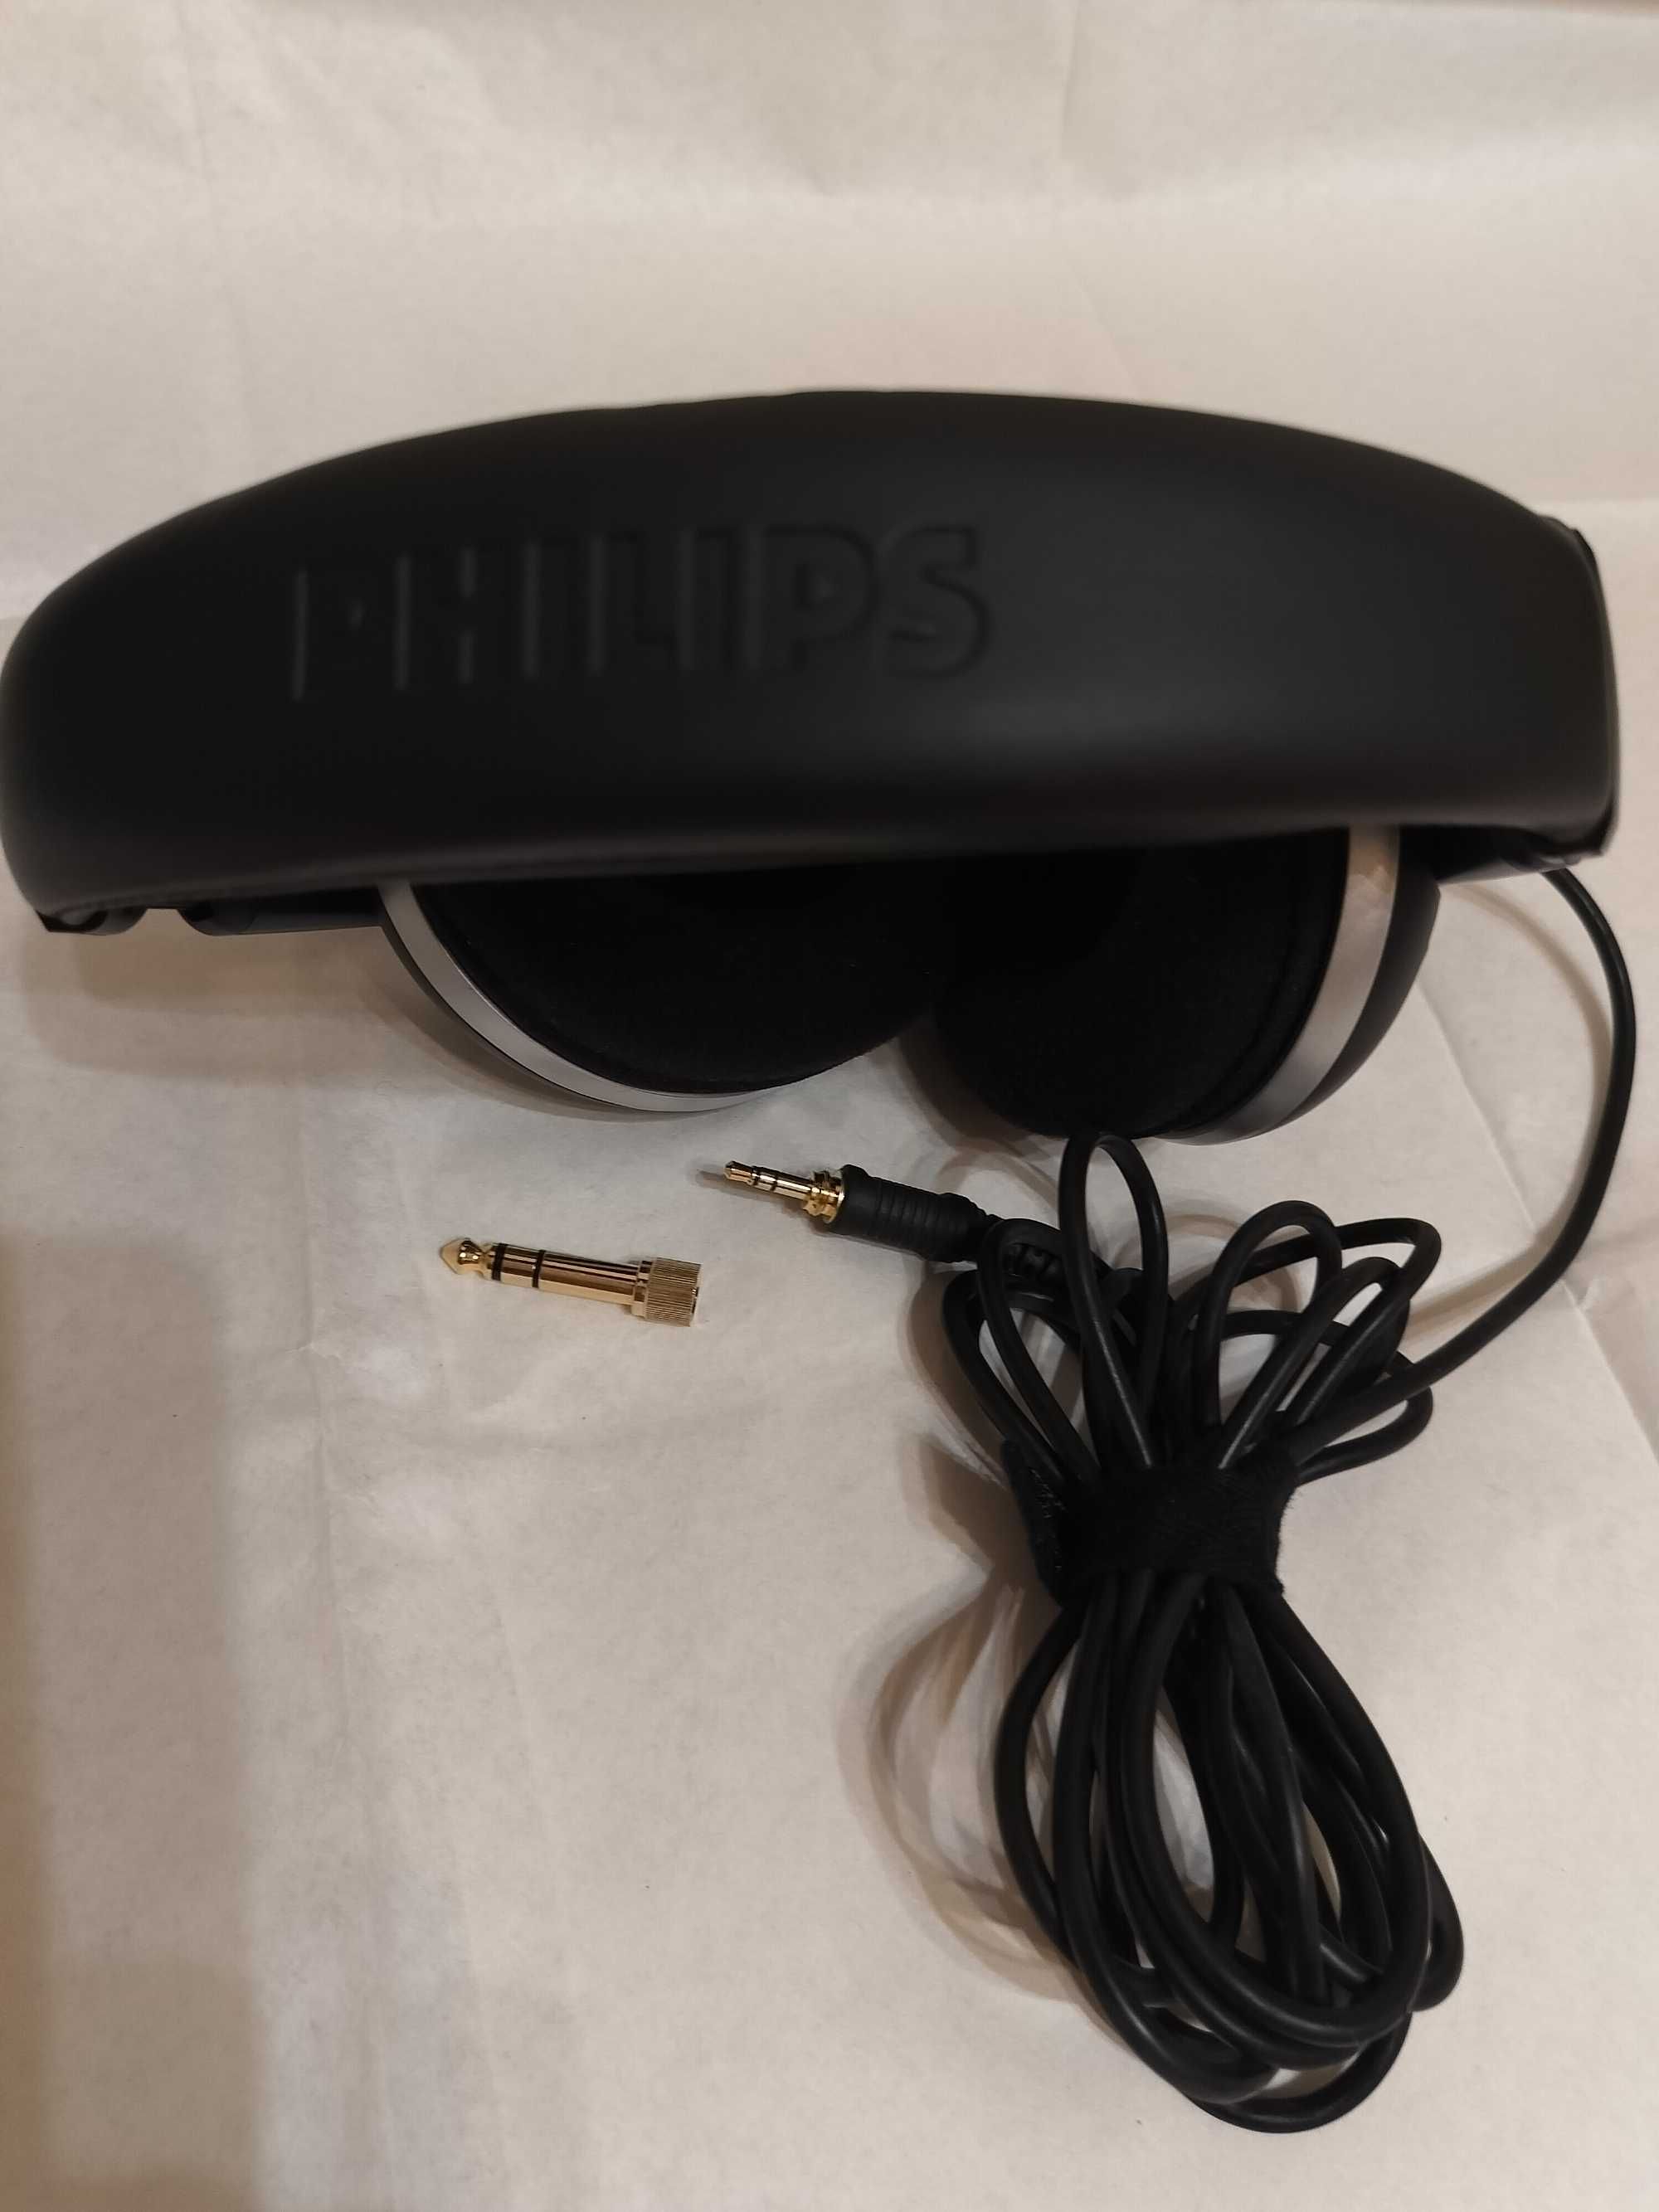 Наушники Hi-Fi Philips SHP8500/00. Полноразмерные.